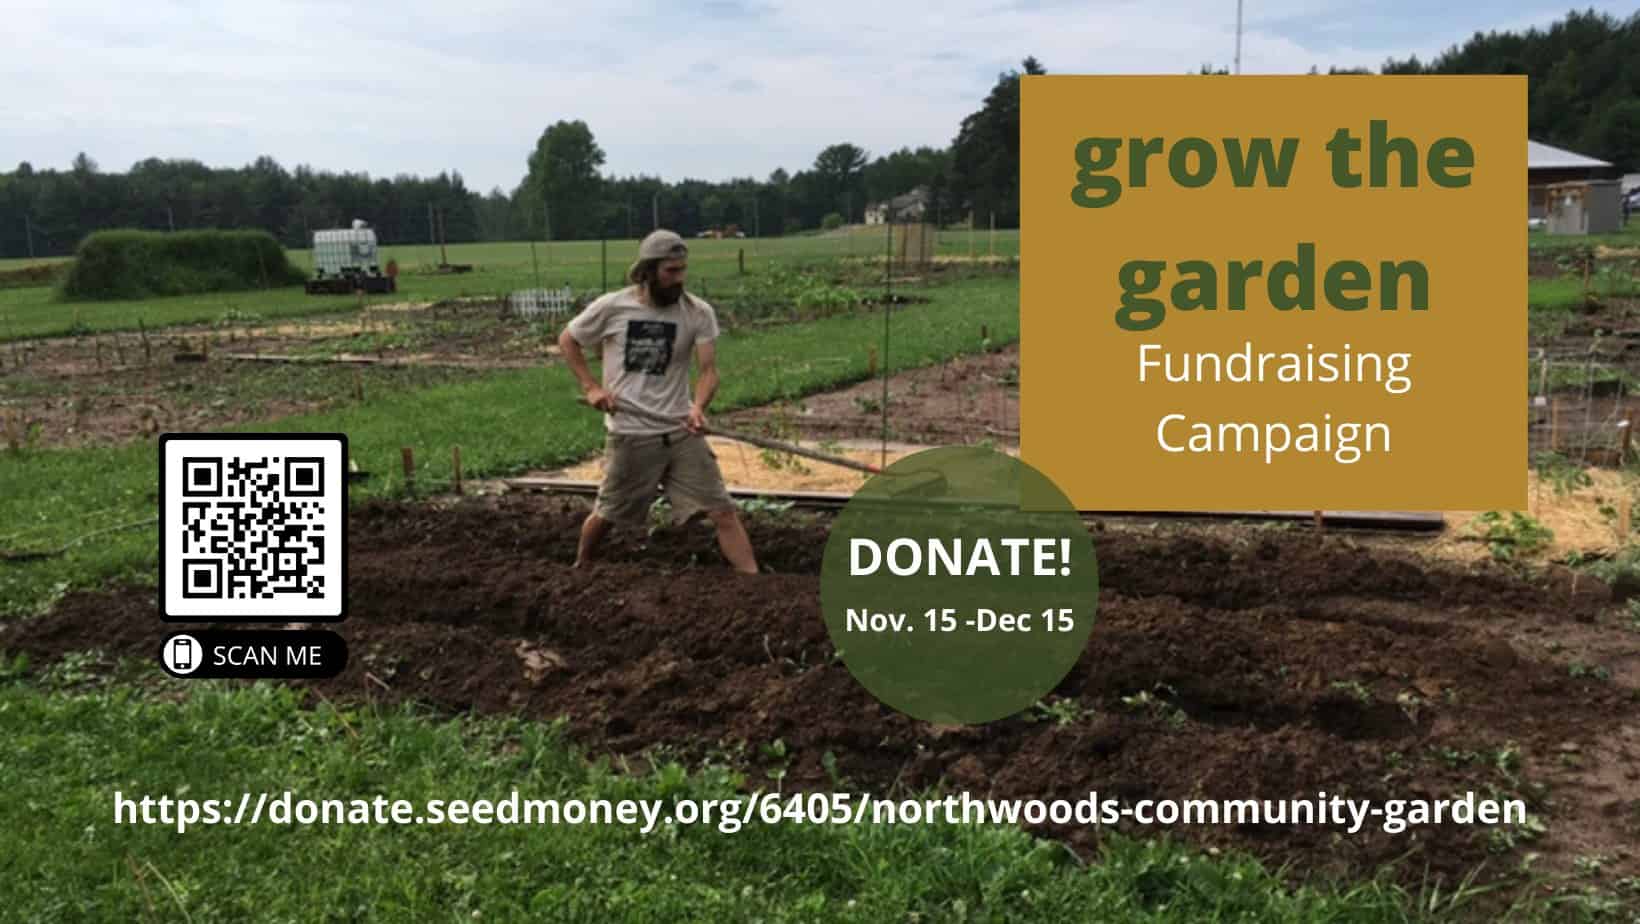 Northwoods Community Garden ‘Grow the Garden’ fundraising campaign underway